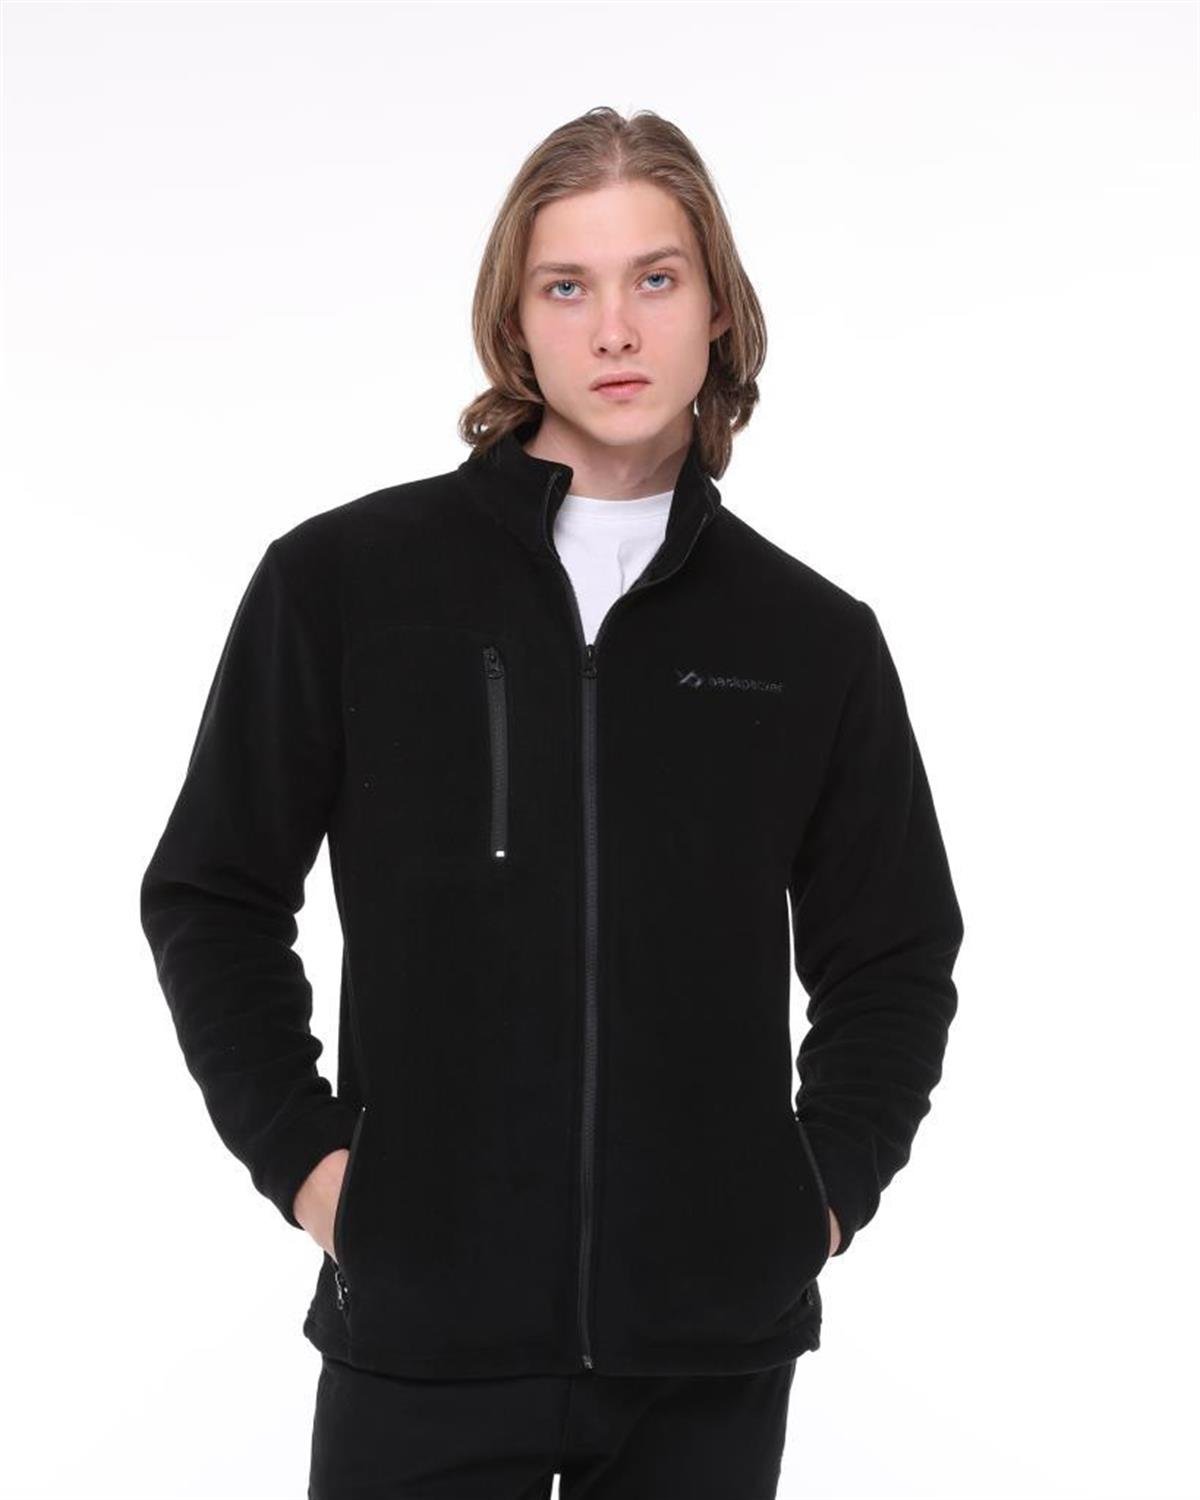 Erkek Polar Mont Sweatshirt Modelleri ve Fiyatları | Bee.com.tr